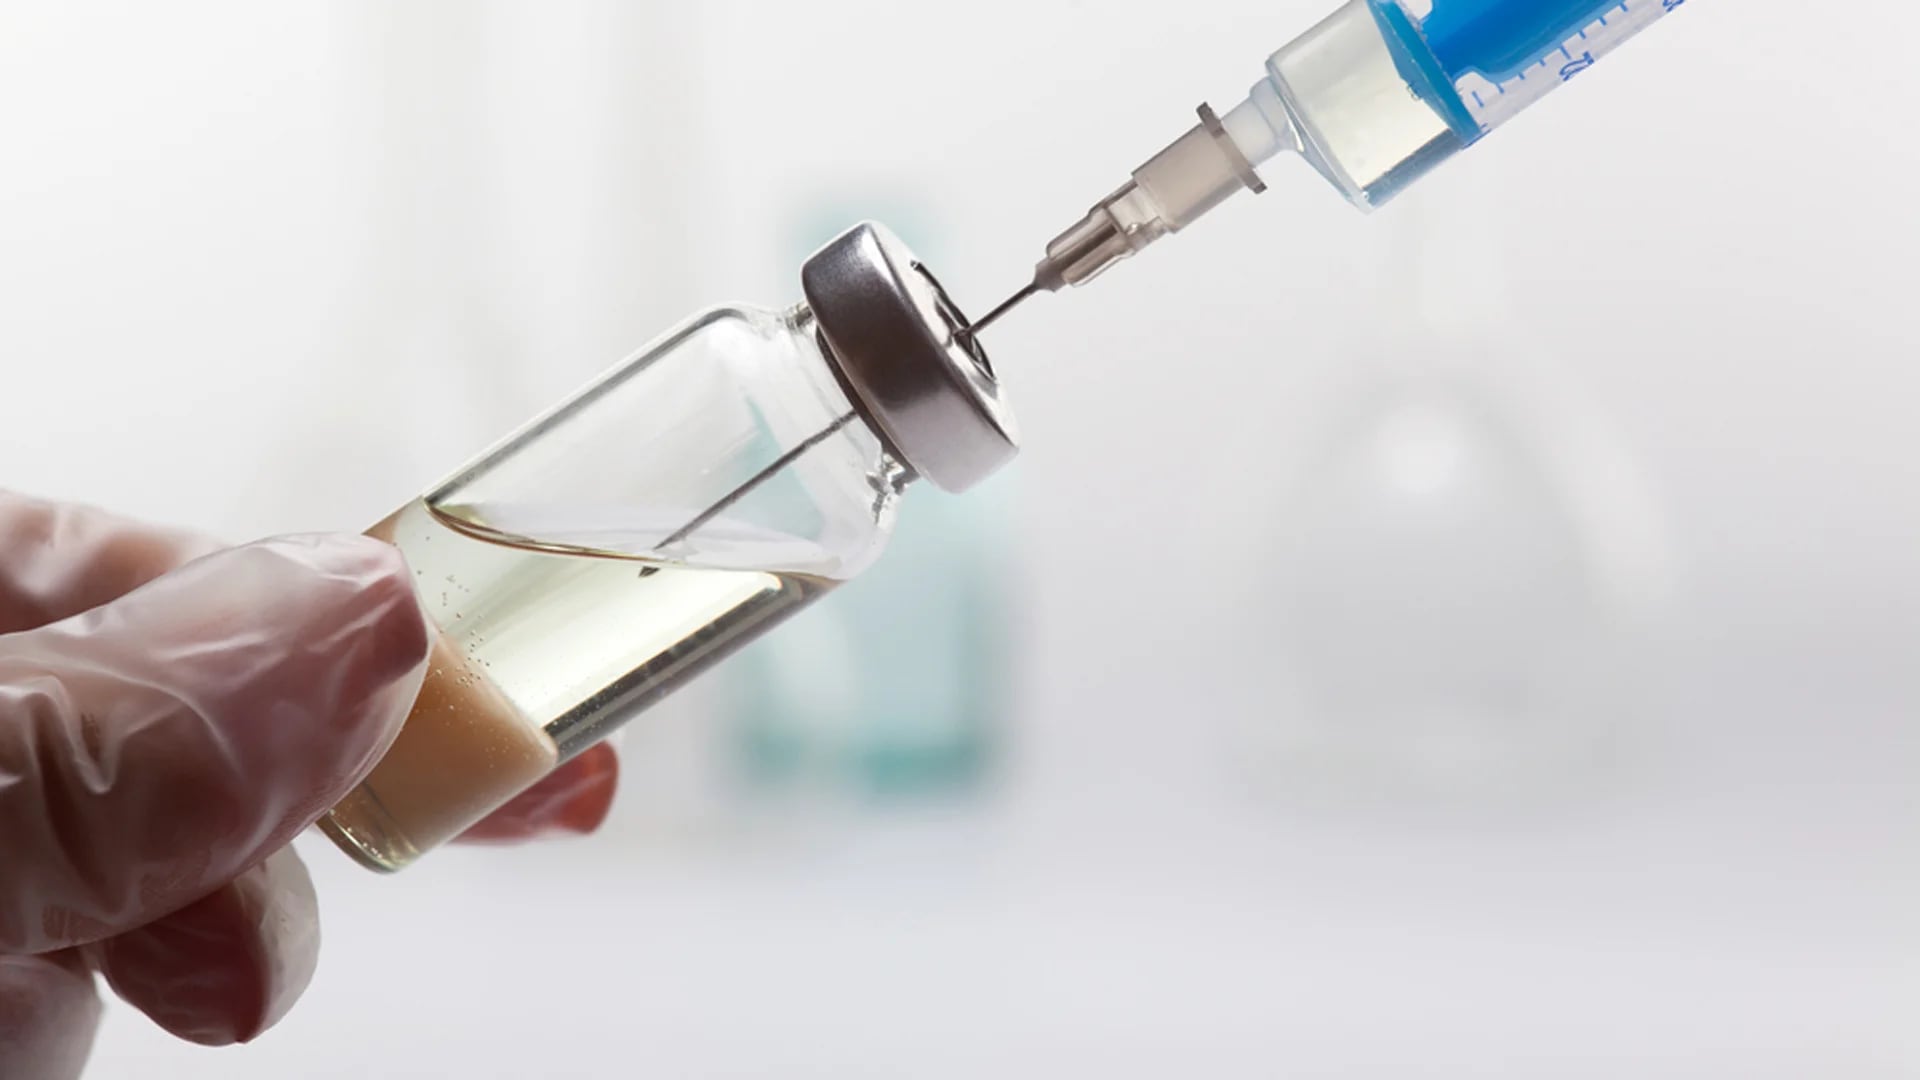 La vacunación infanti es fundamental para evitar la propagación de enfermedades (Shutterstock)